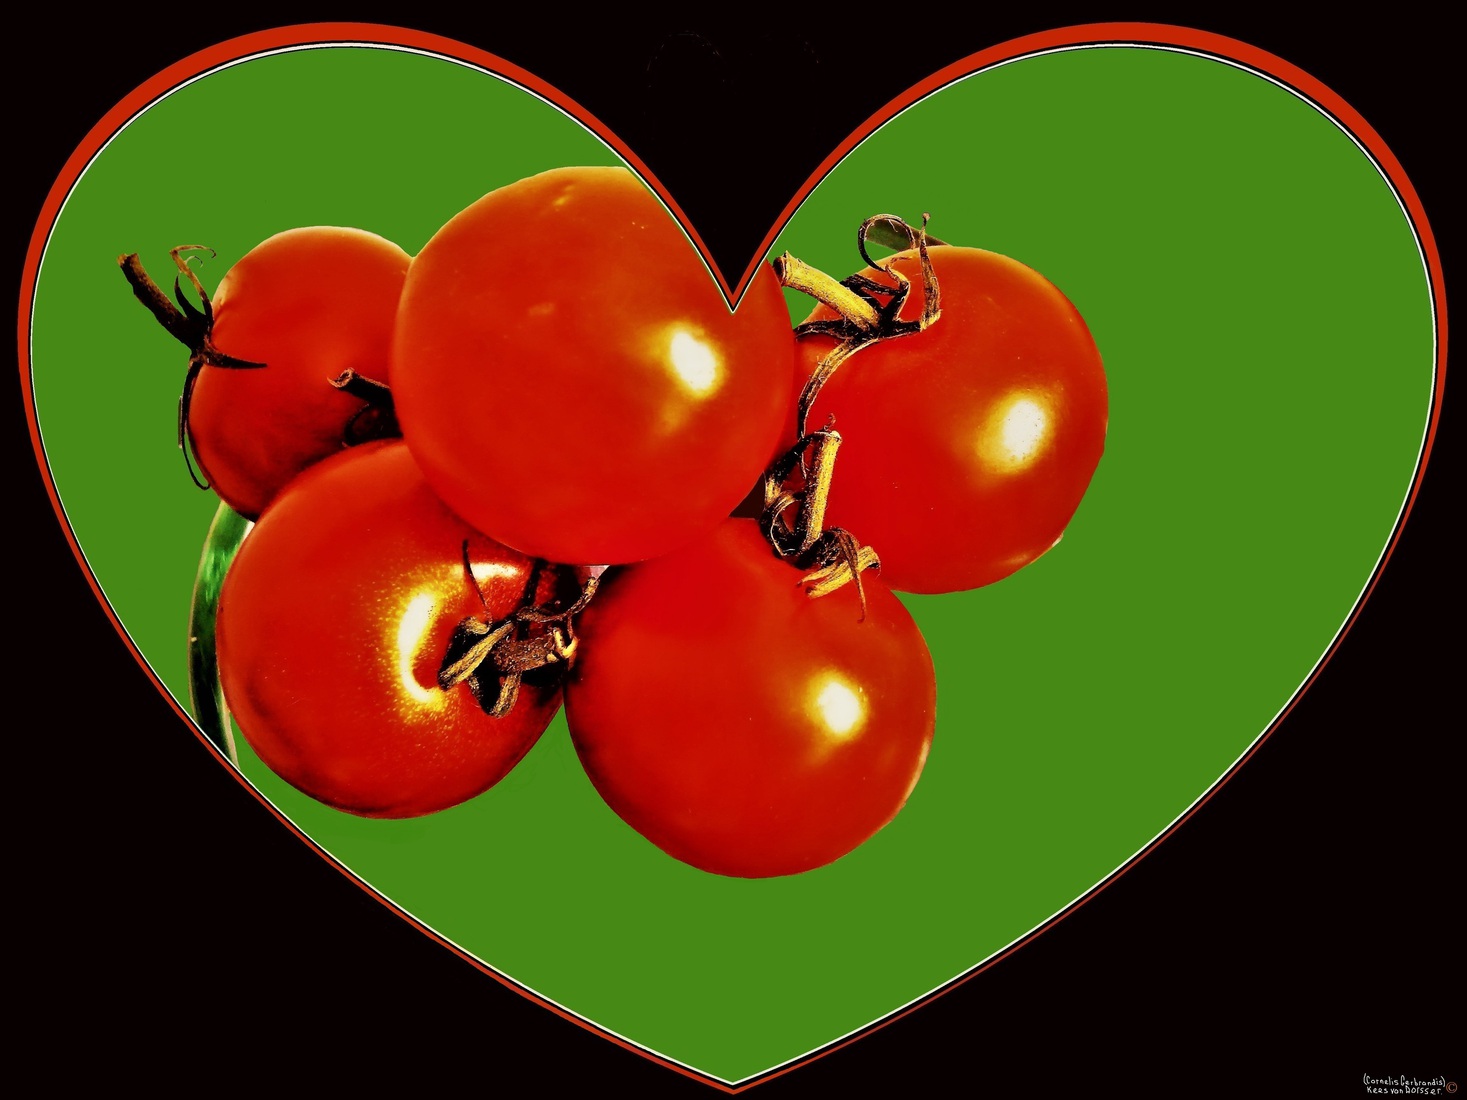 Tros tomaten